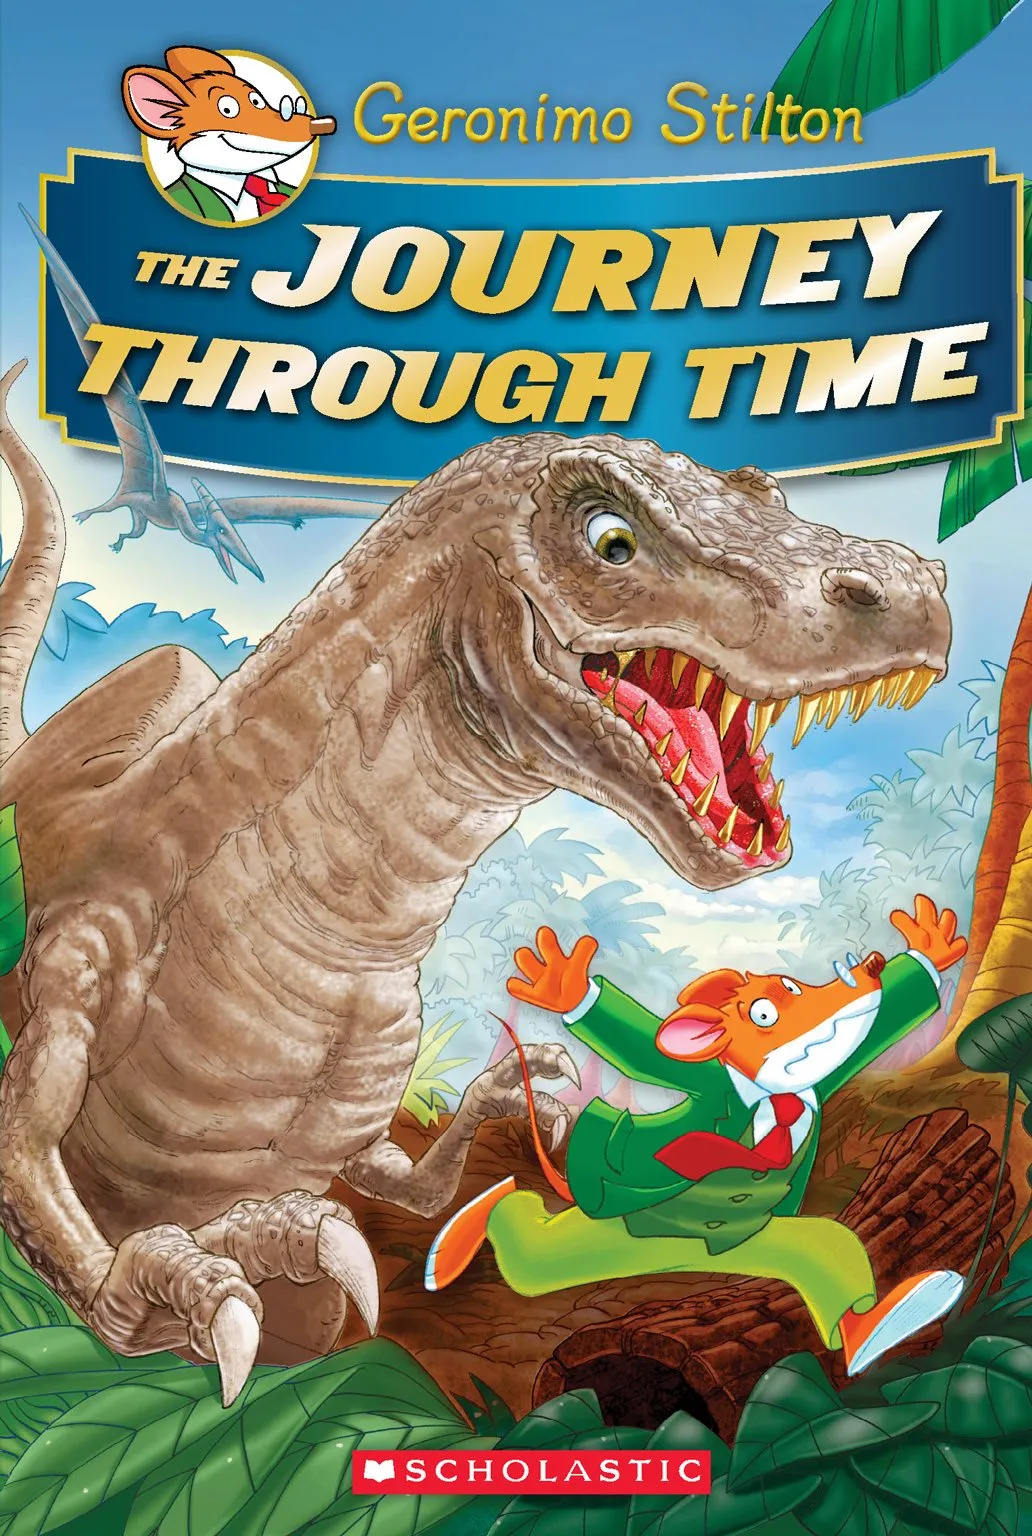 The Journey Through Time (Geronimo Stilton Journey Through Time #1)